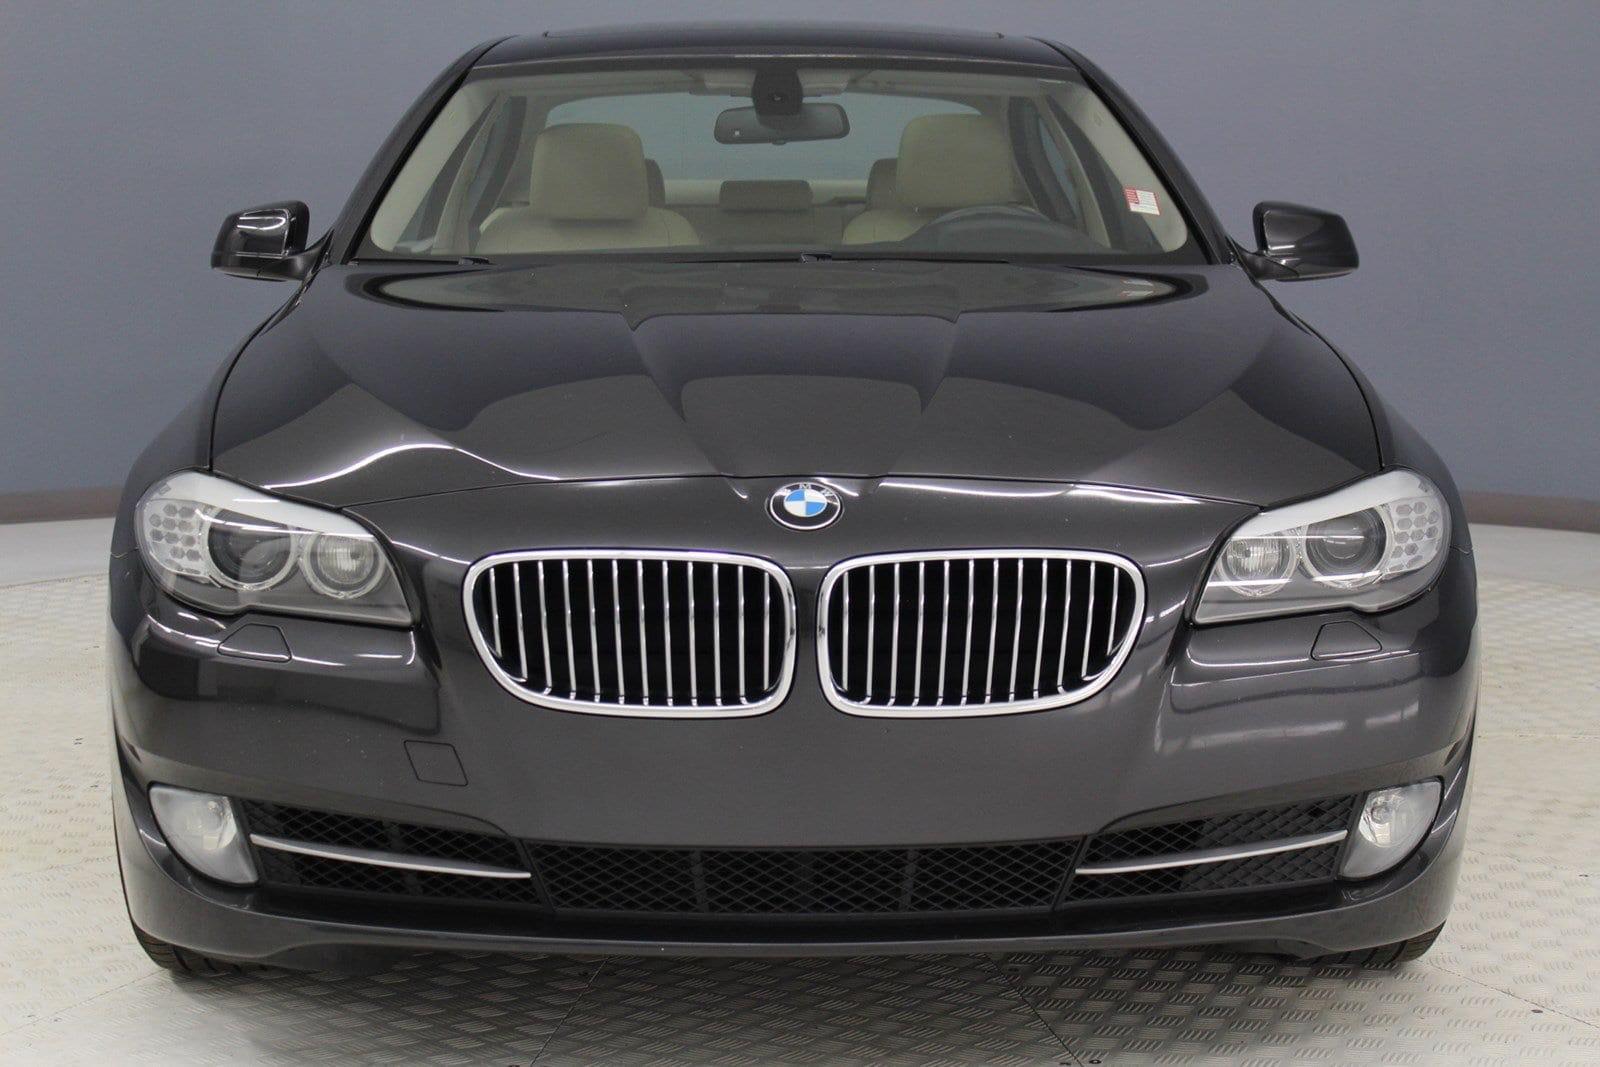 2012 BMW 528i $14,993